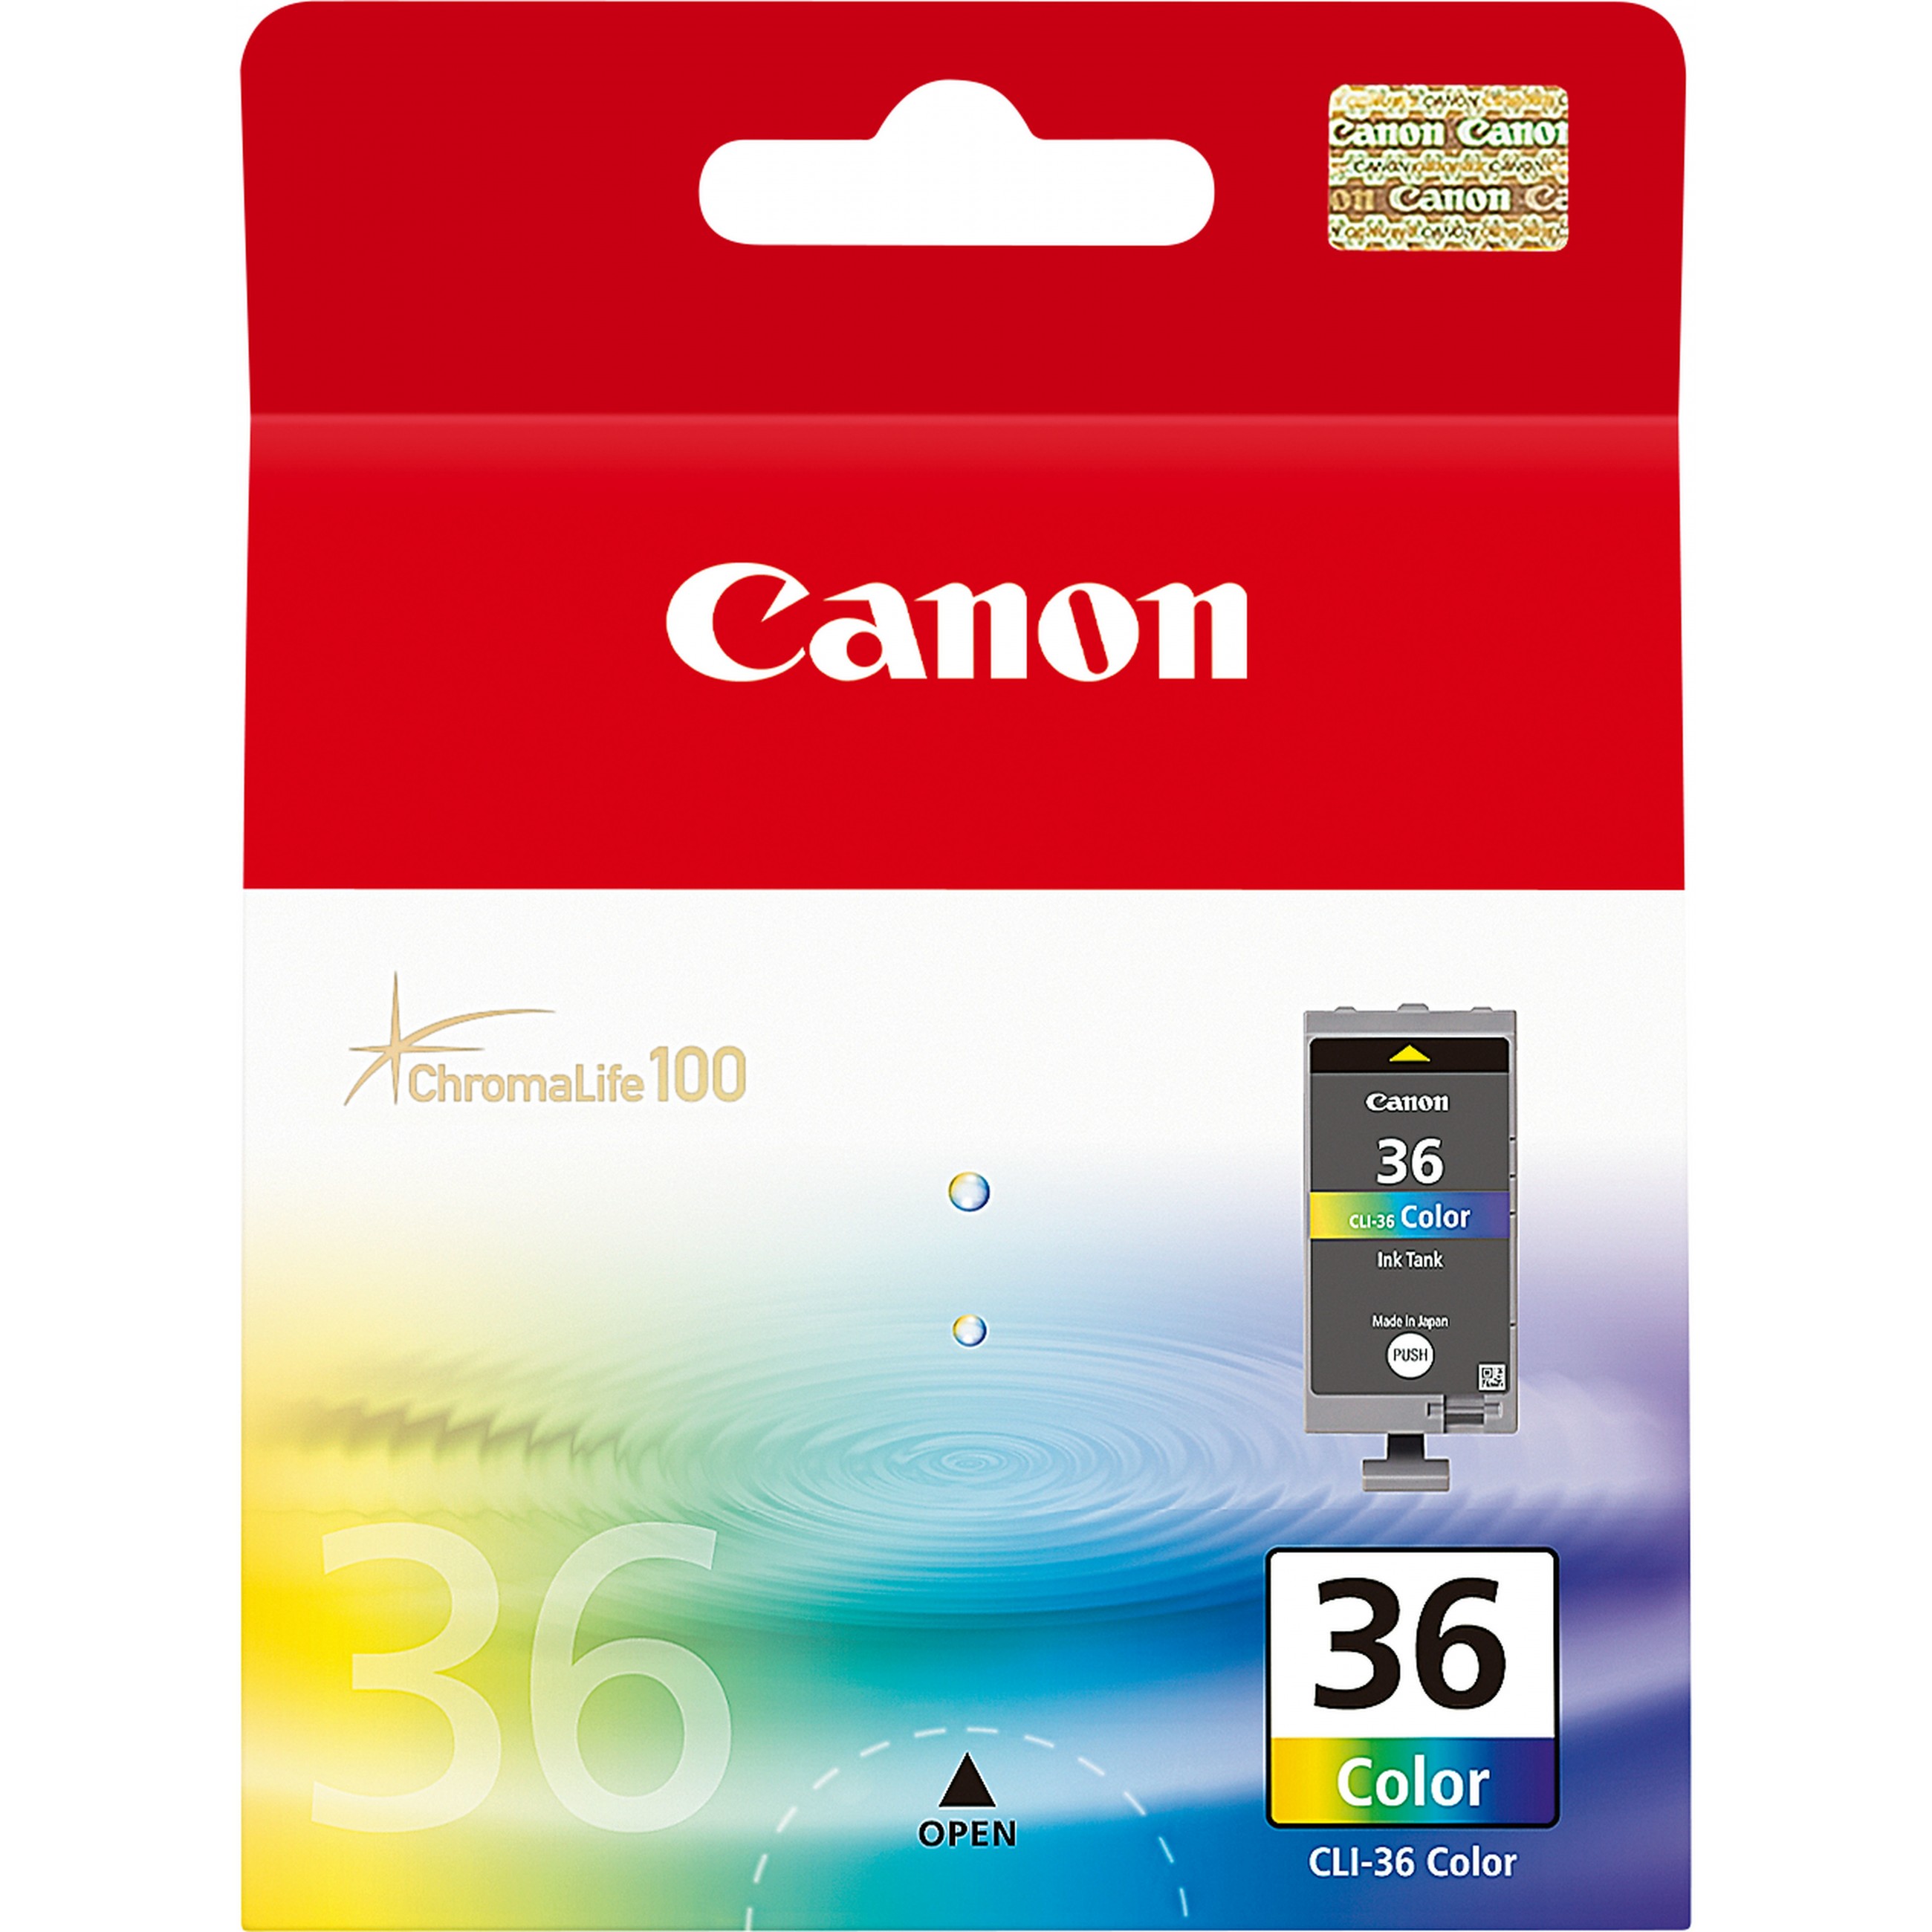 Canon Tinte CLI-36 1511B001 Color bis zu 249 Seiten gemäß ISO/IEC 24711